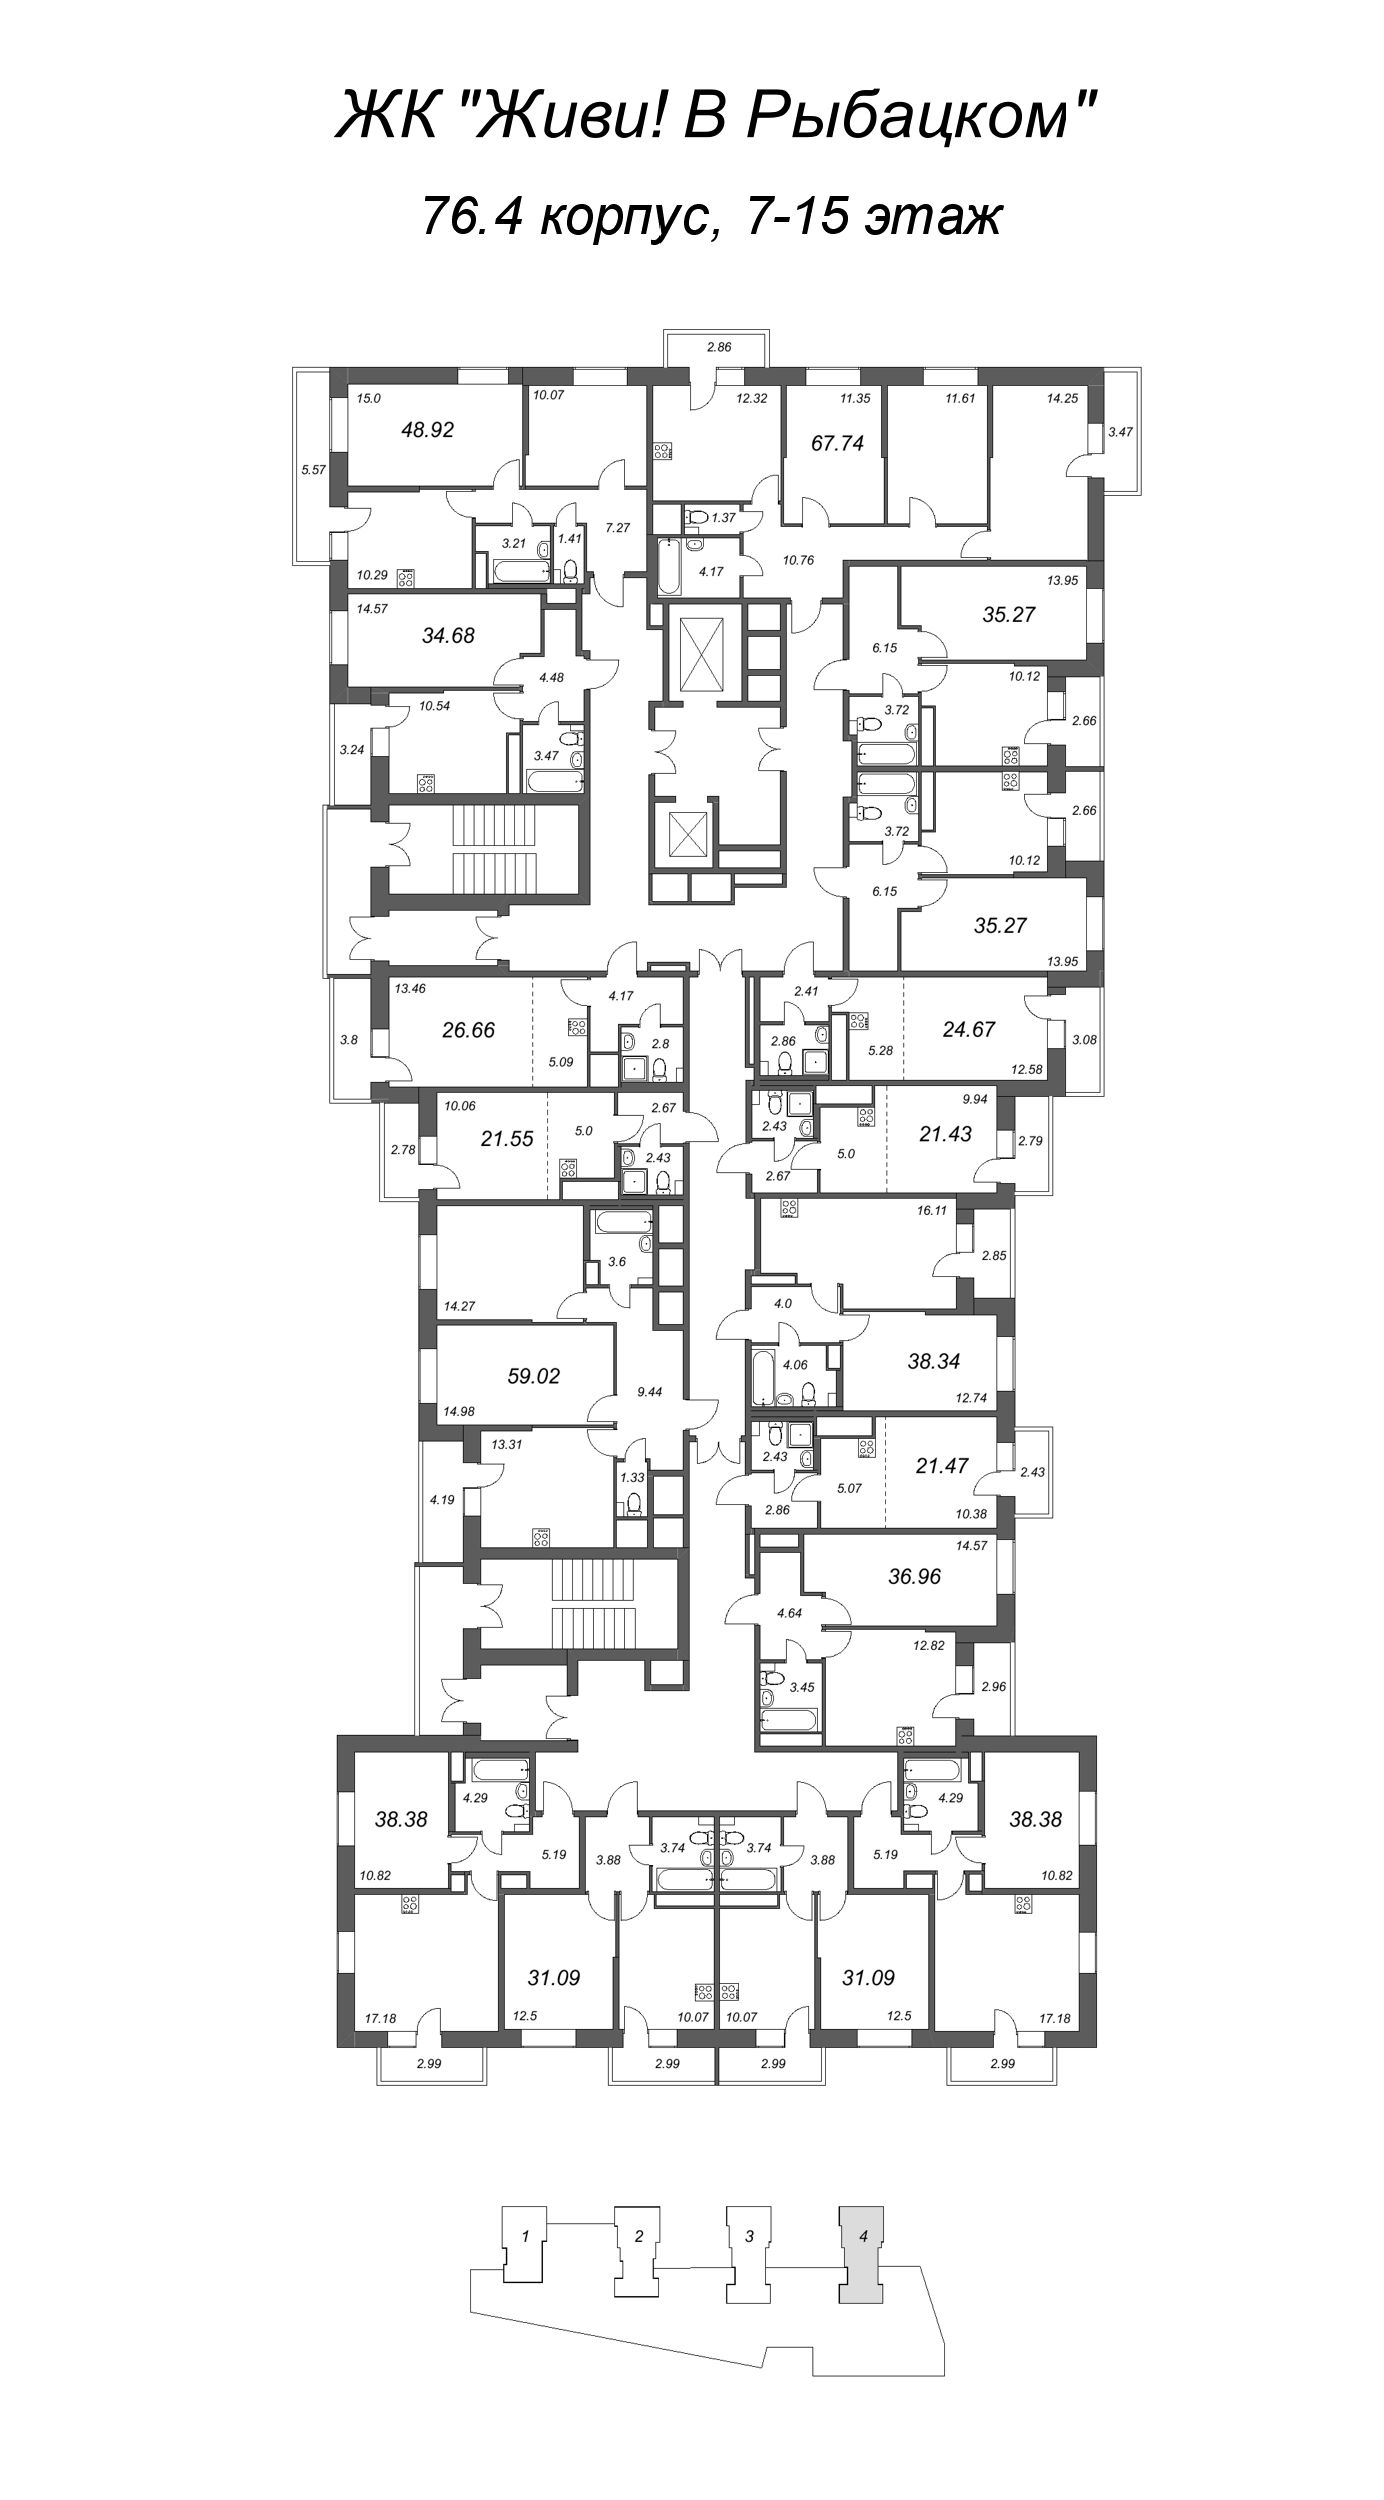 Квартира-студия, 21.43 м² в ЖК "Живи! В Рыбацком" - планировка этажа